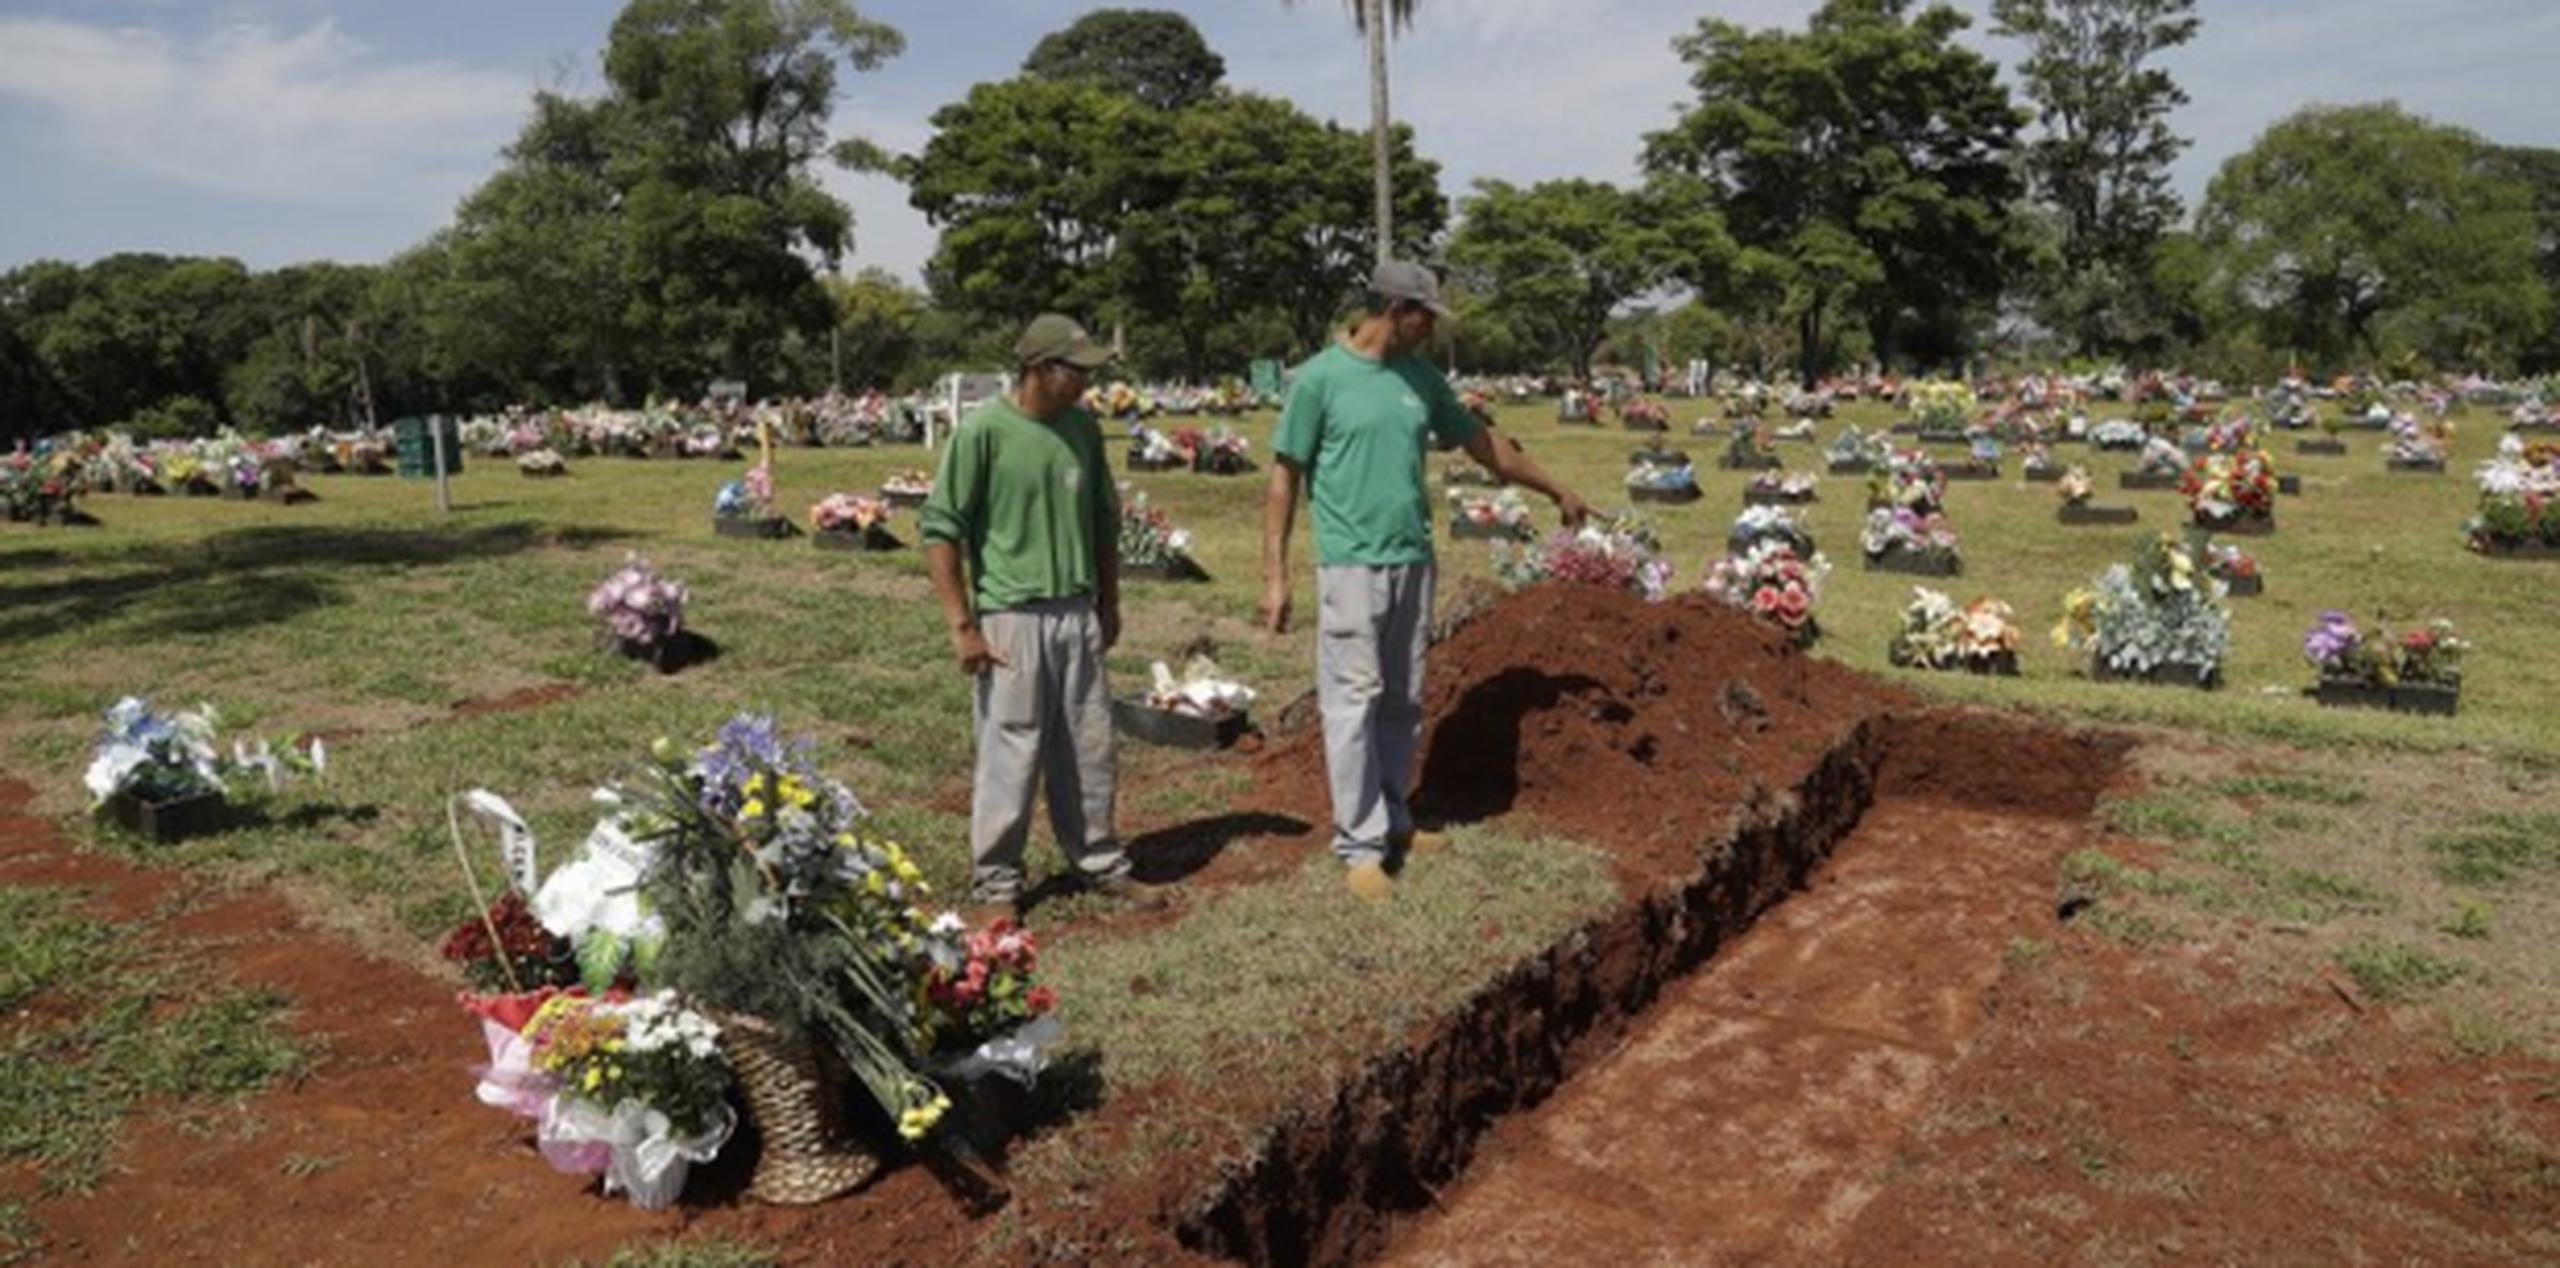 El personal del cementerio Jardim do Eden (Jardín del Edén), donde recibirán sepultura algunas de las víctimas, dijeron el viernes que están acostumbrados a la muerte, pero no a este tipo de tragedias. (AP)